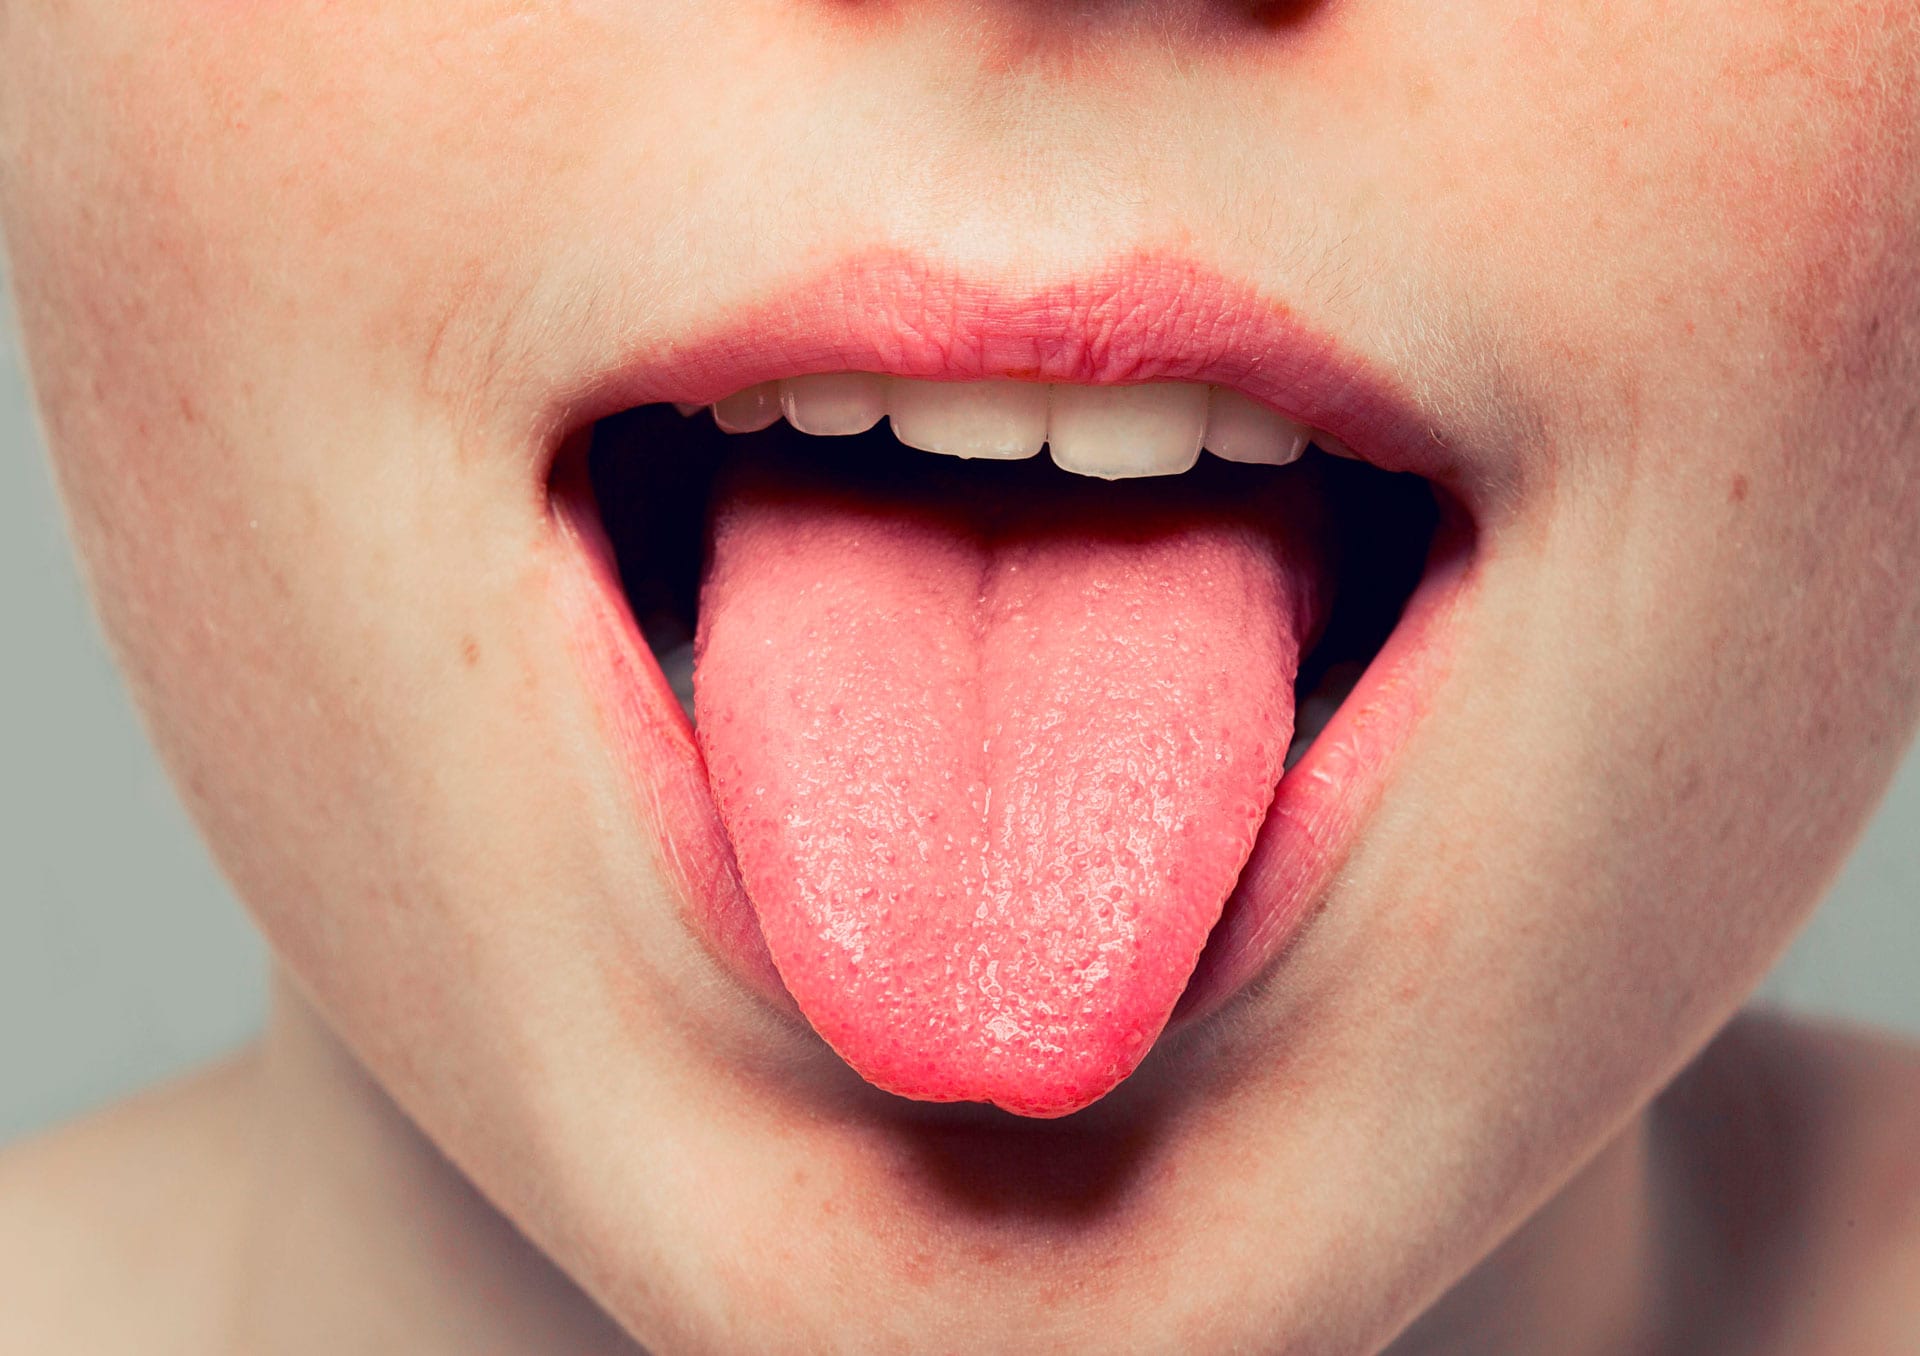 É normal ter um caroço no céu da boca? - Blog Dentalclean